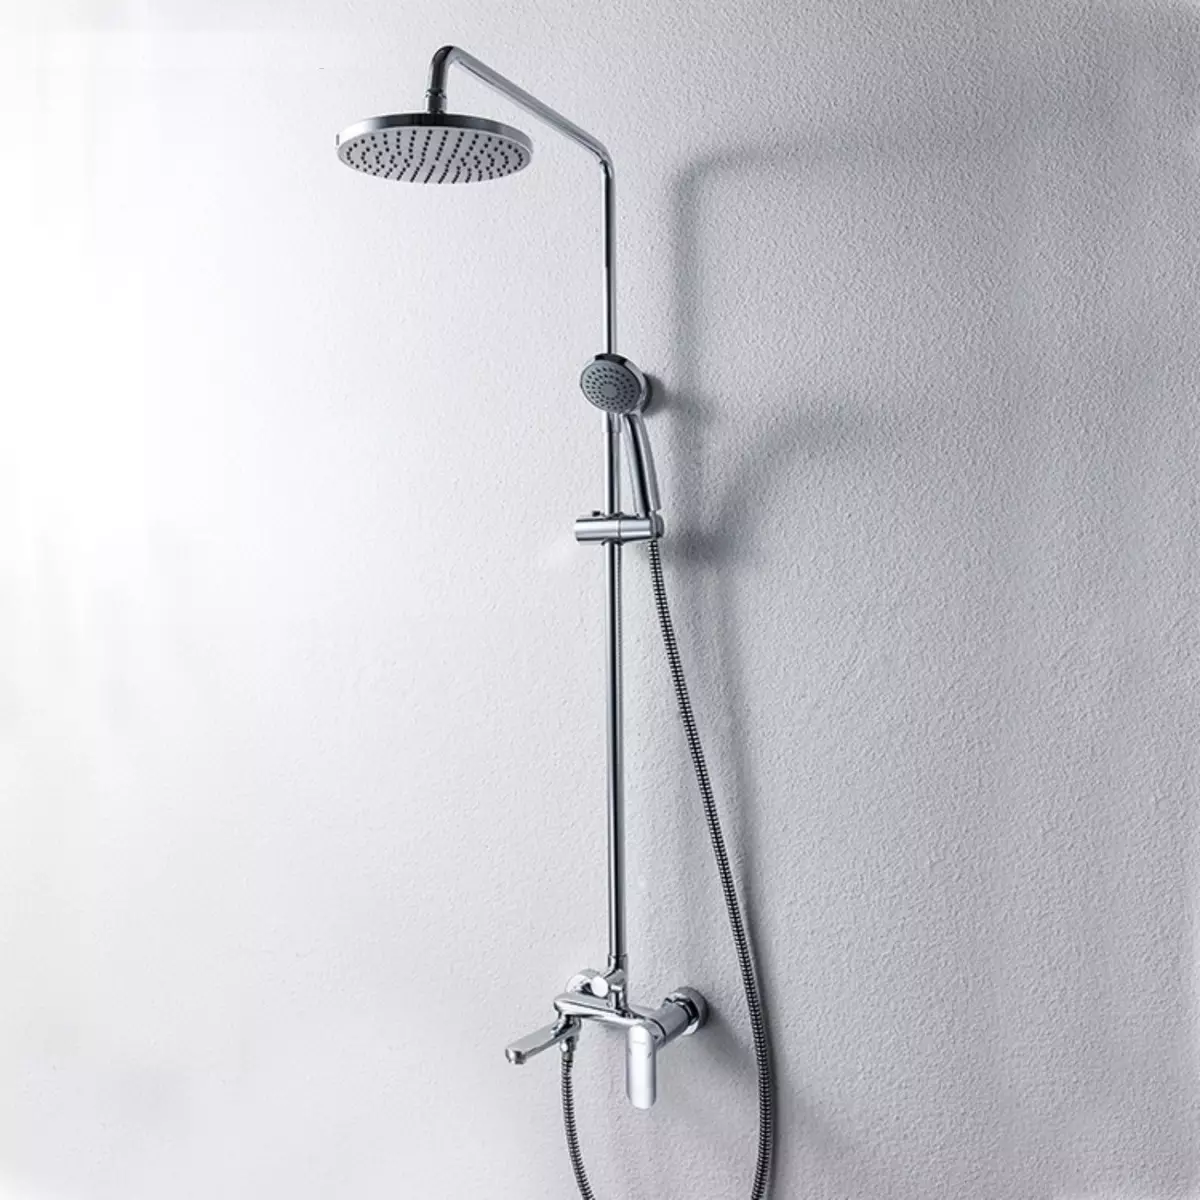 Stojak prysznicowy z pisownią: System kąpielowy z górnym prysznicem, panel z długim i obrotowym skręconym, wybór zestawu słuchawkowego 10377_10